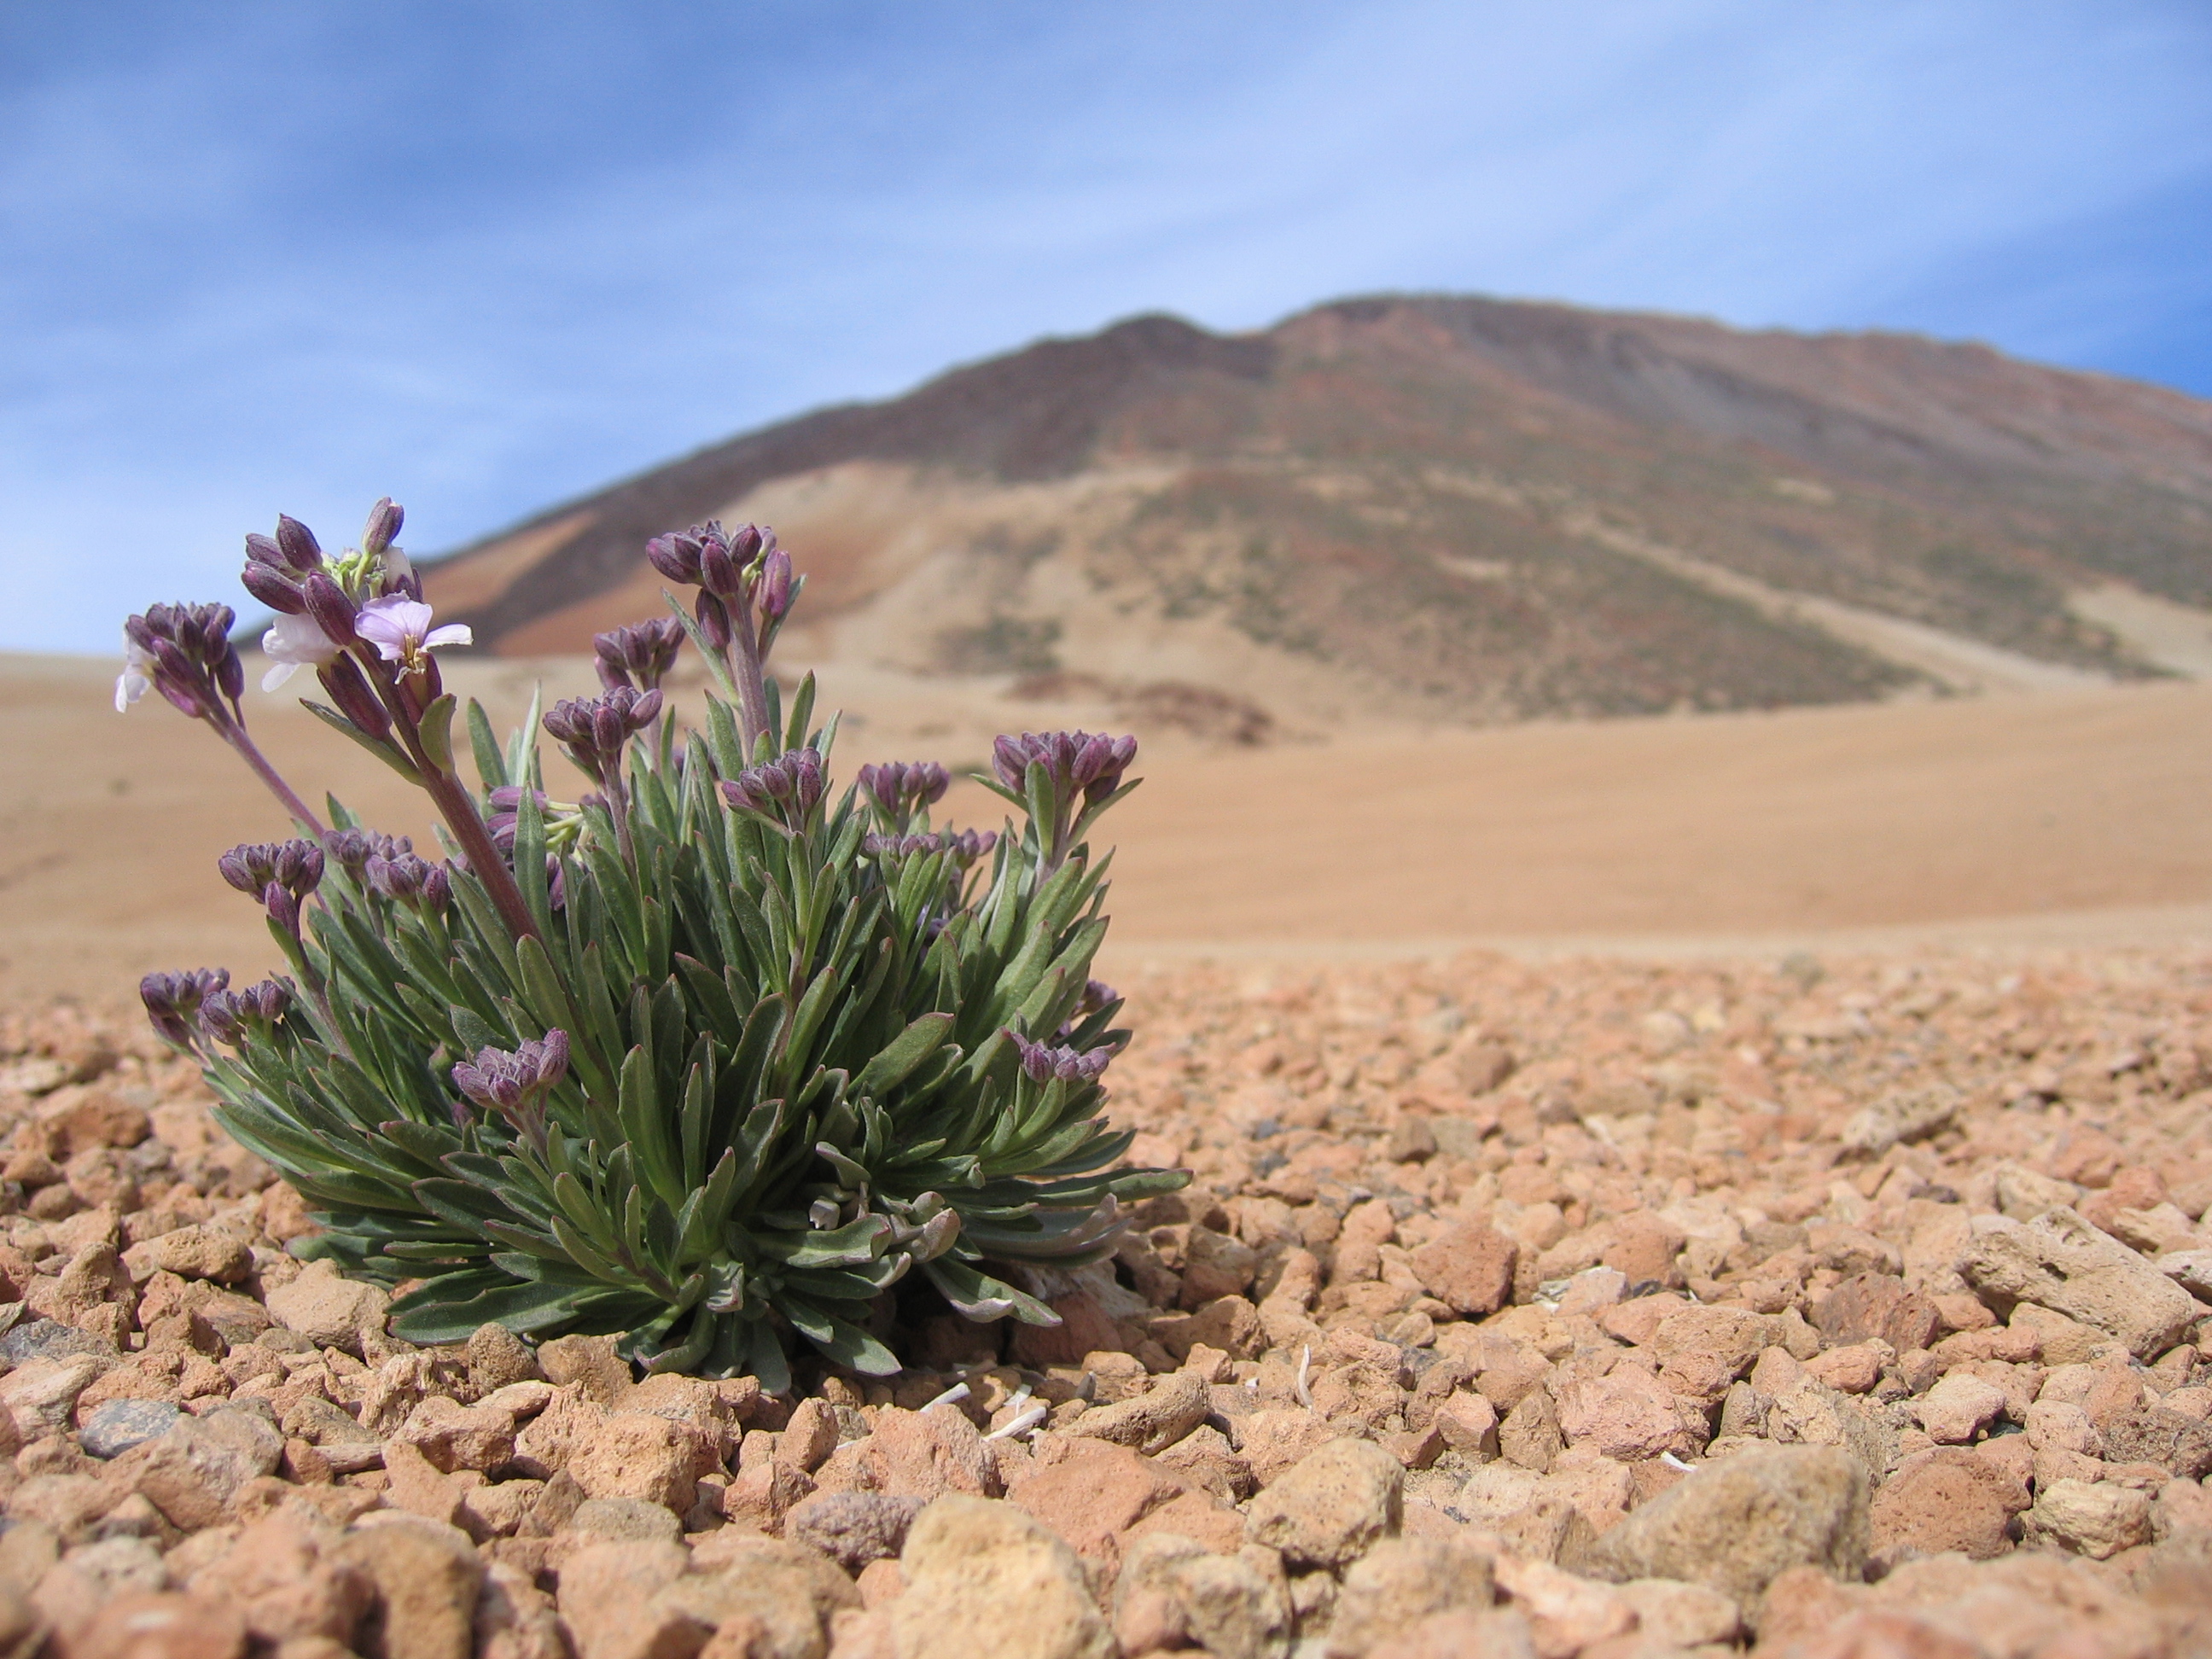 File:Plants between rocks on Teide - 002.JPG - Wikimedia Commons